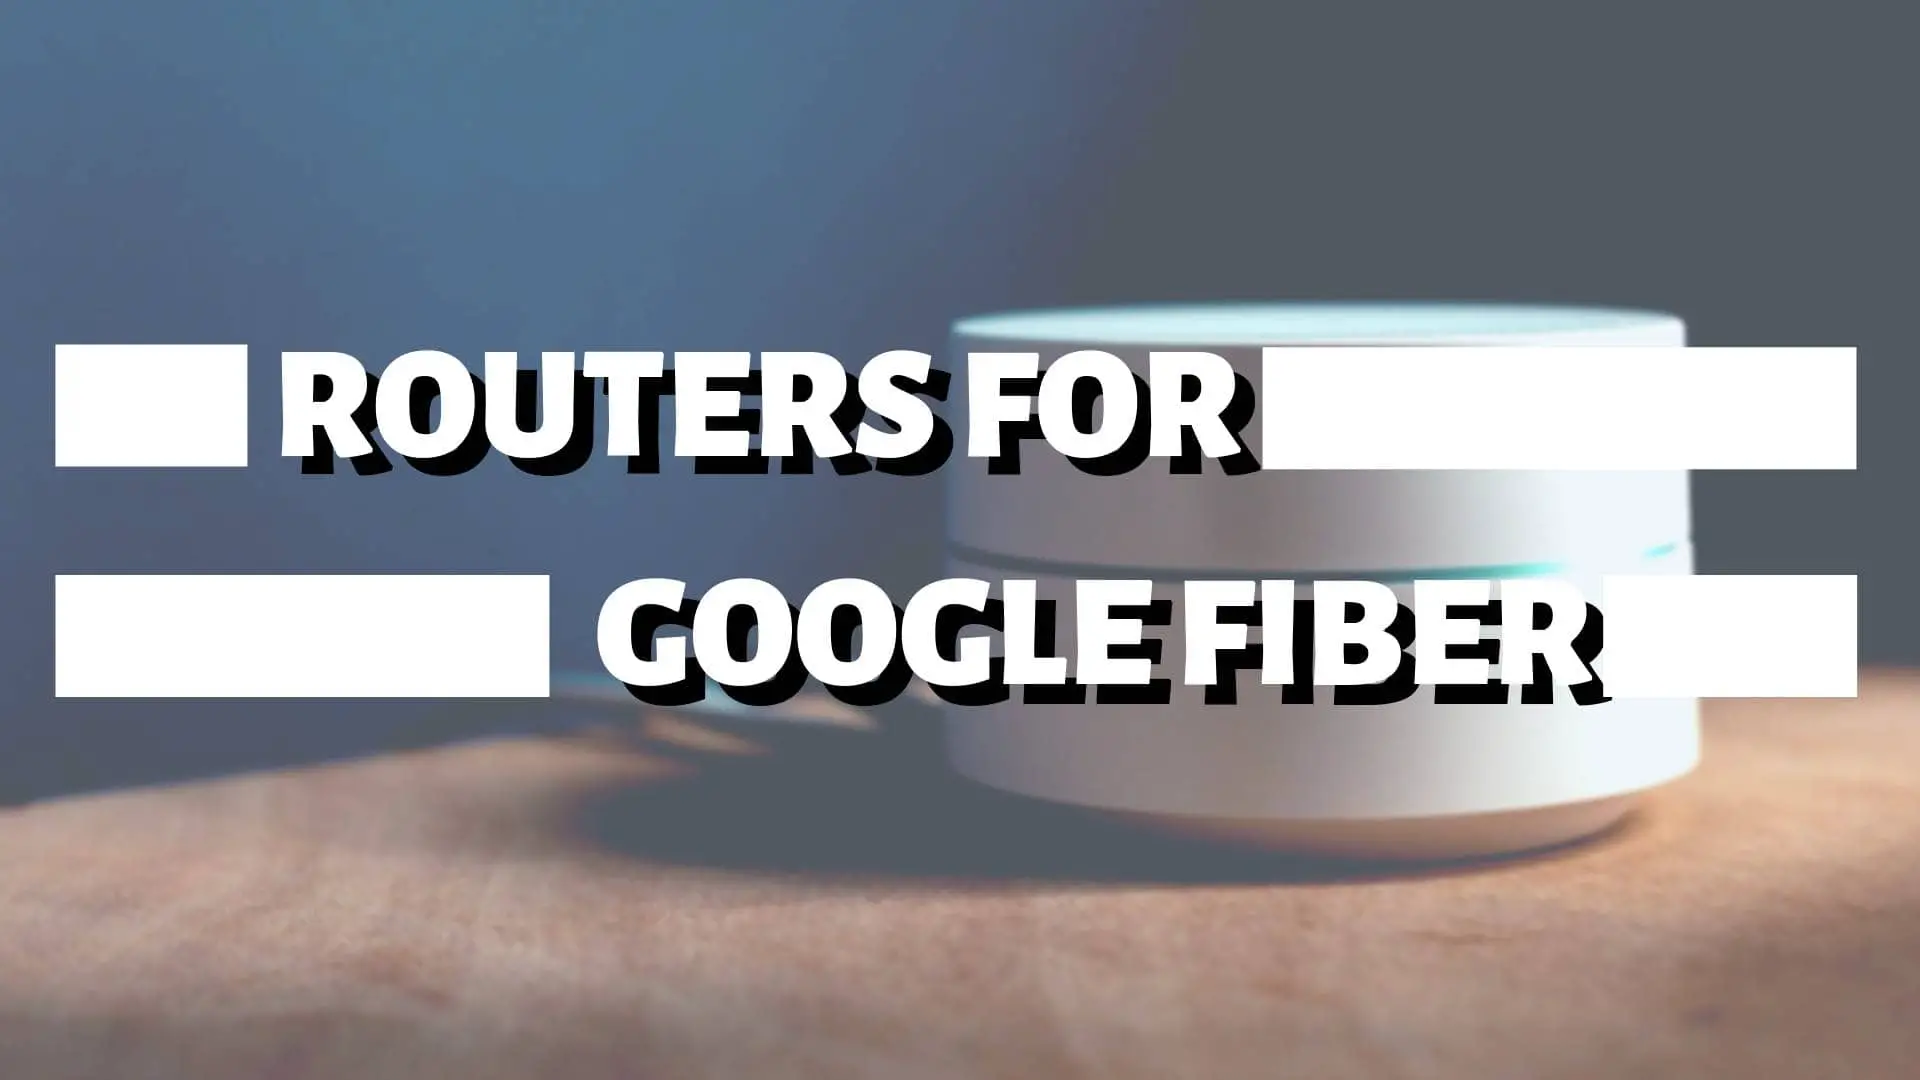 Should I use router for google fiber